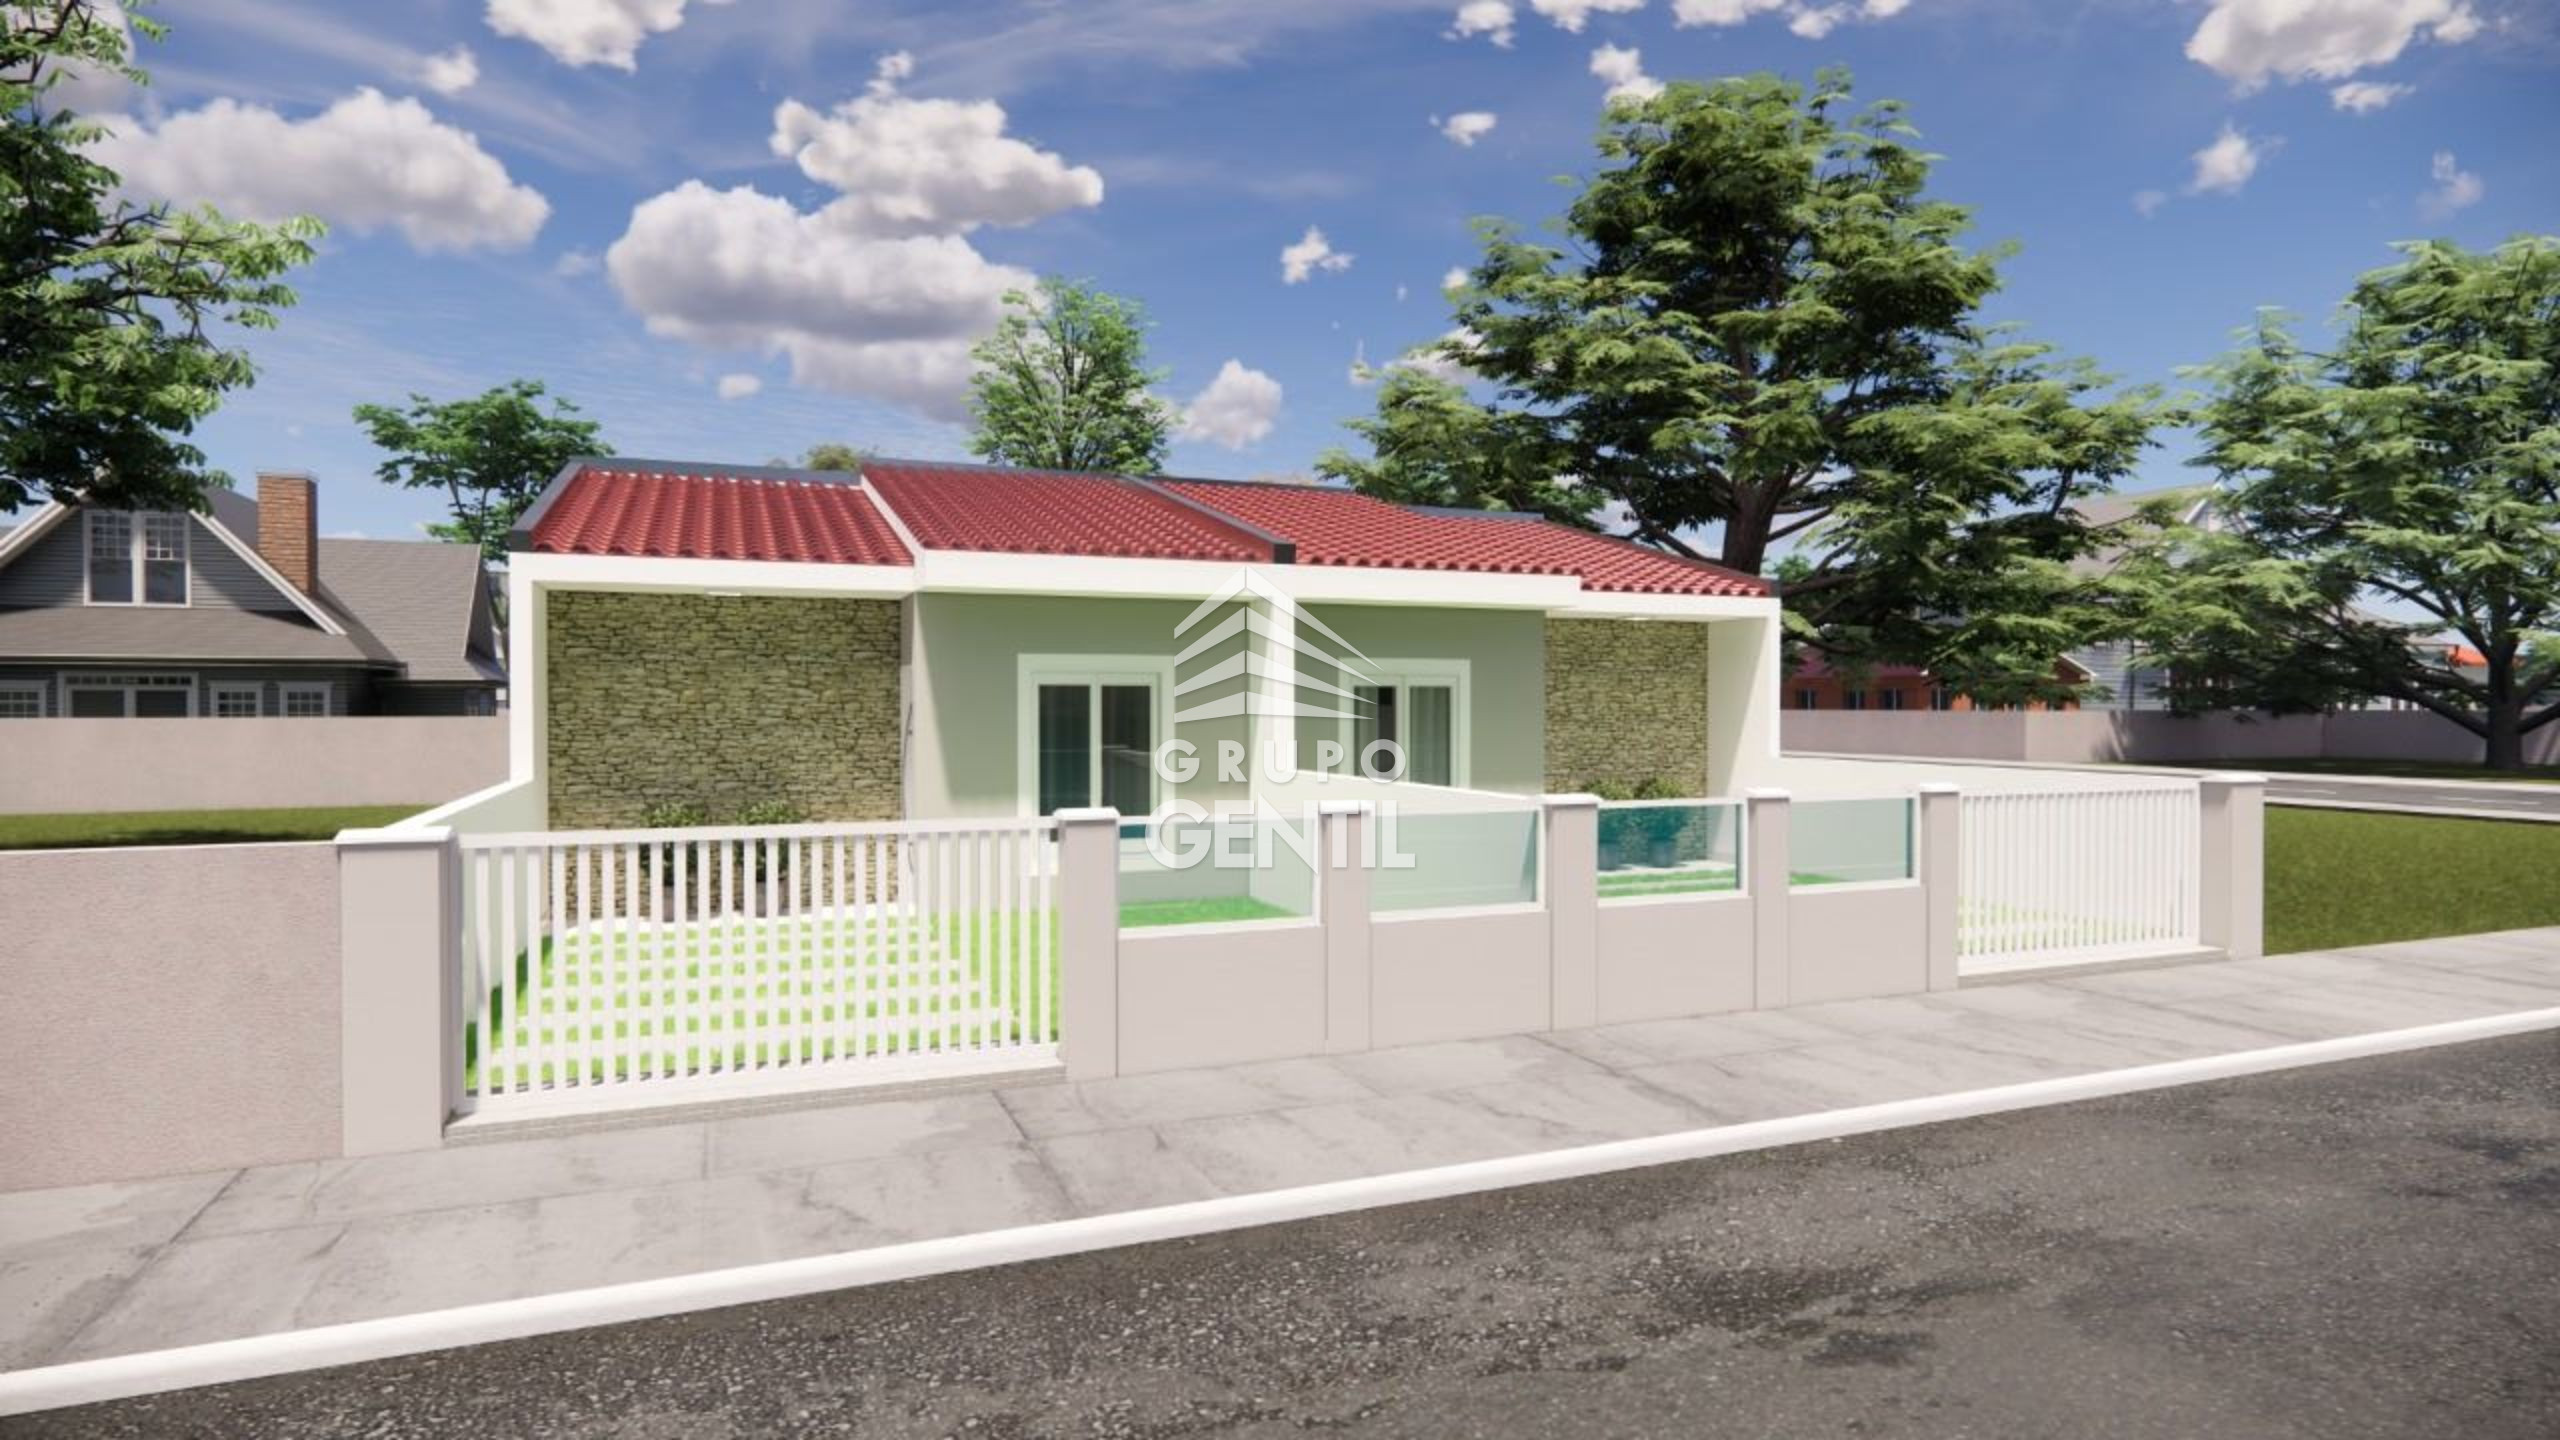 CASA EM CONDOMÍNIO  com 3 dormitórios à venda com 90m² por R$ 370.000,00 no bairro Itapoá - ITAPOA / SC